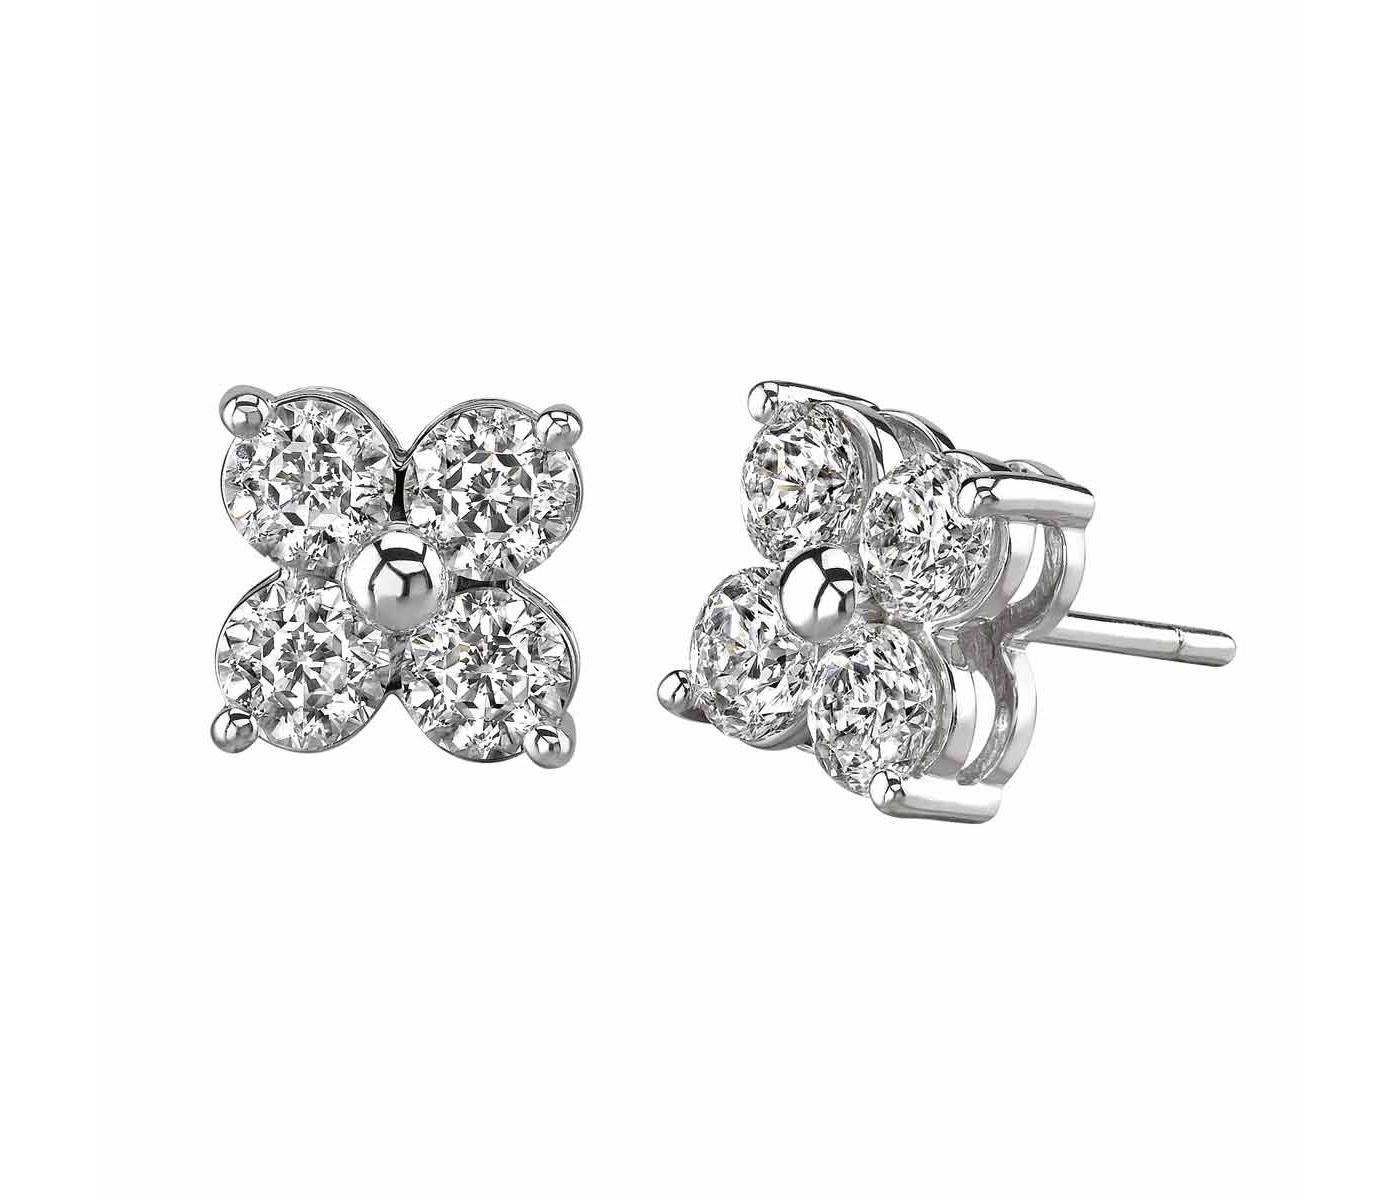 Earrings by Gabrielle Diamond Jewelry